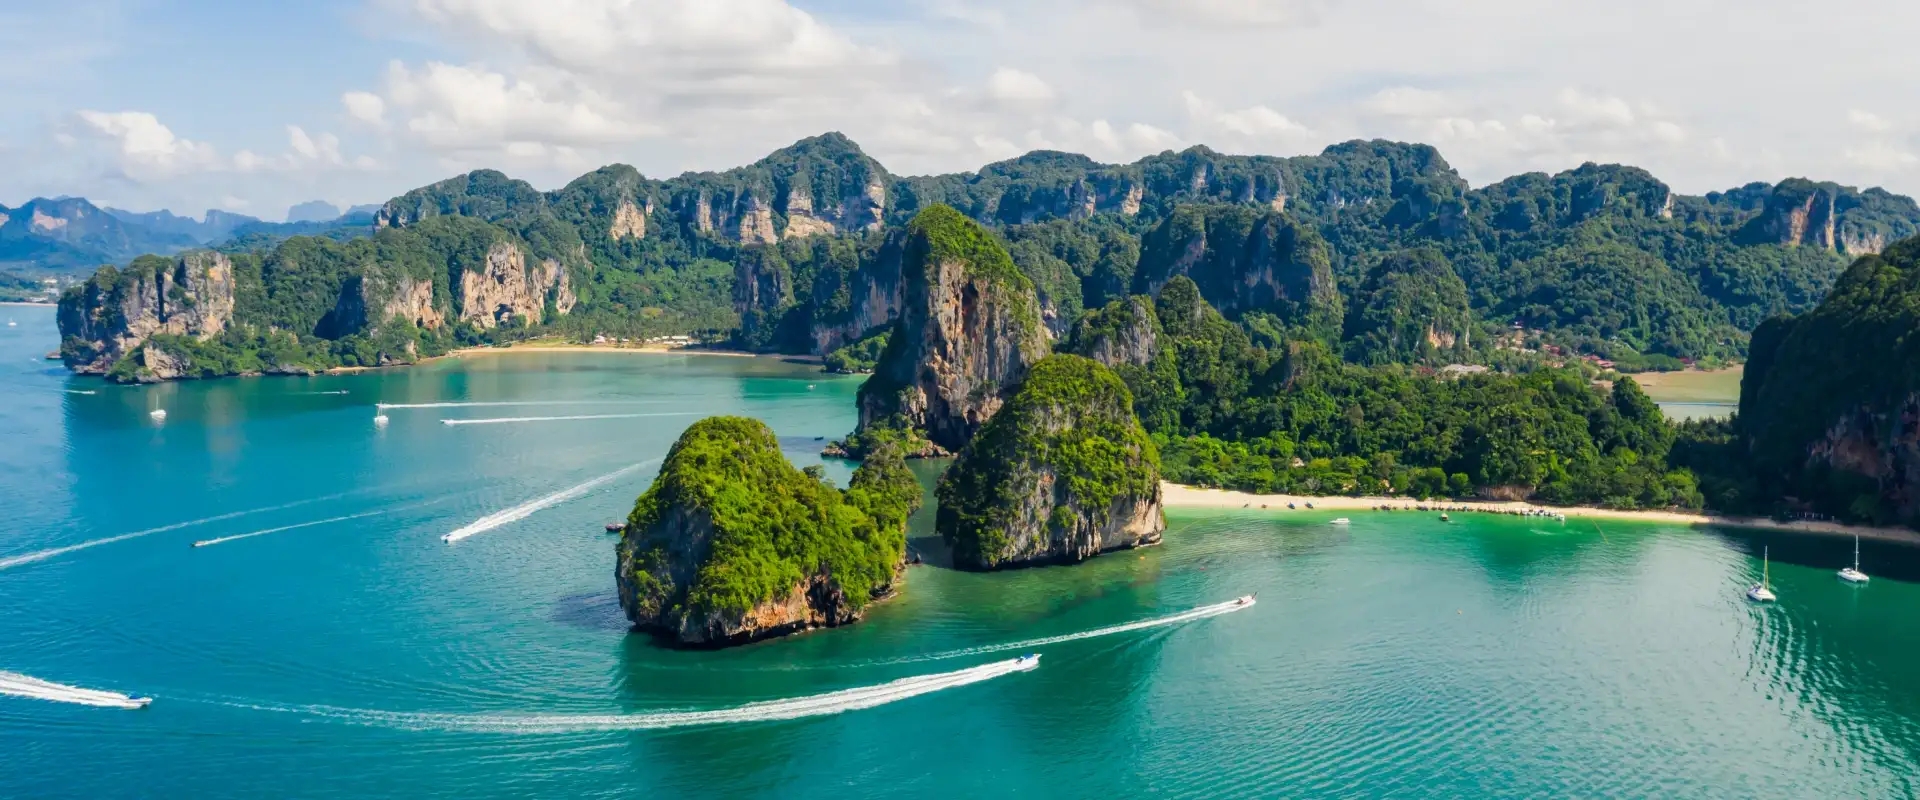 islands in Thailand 